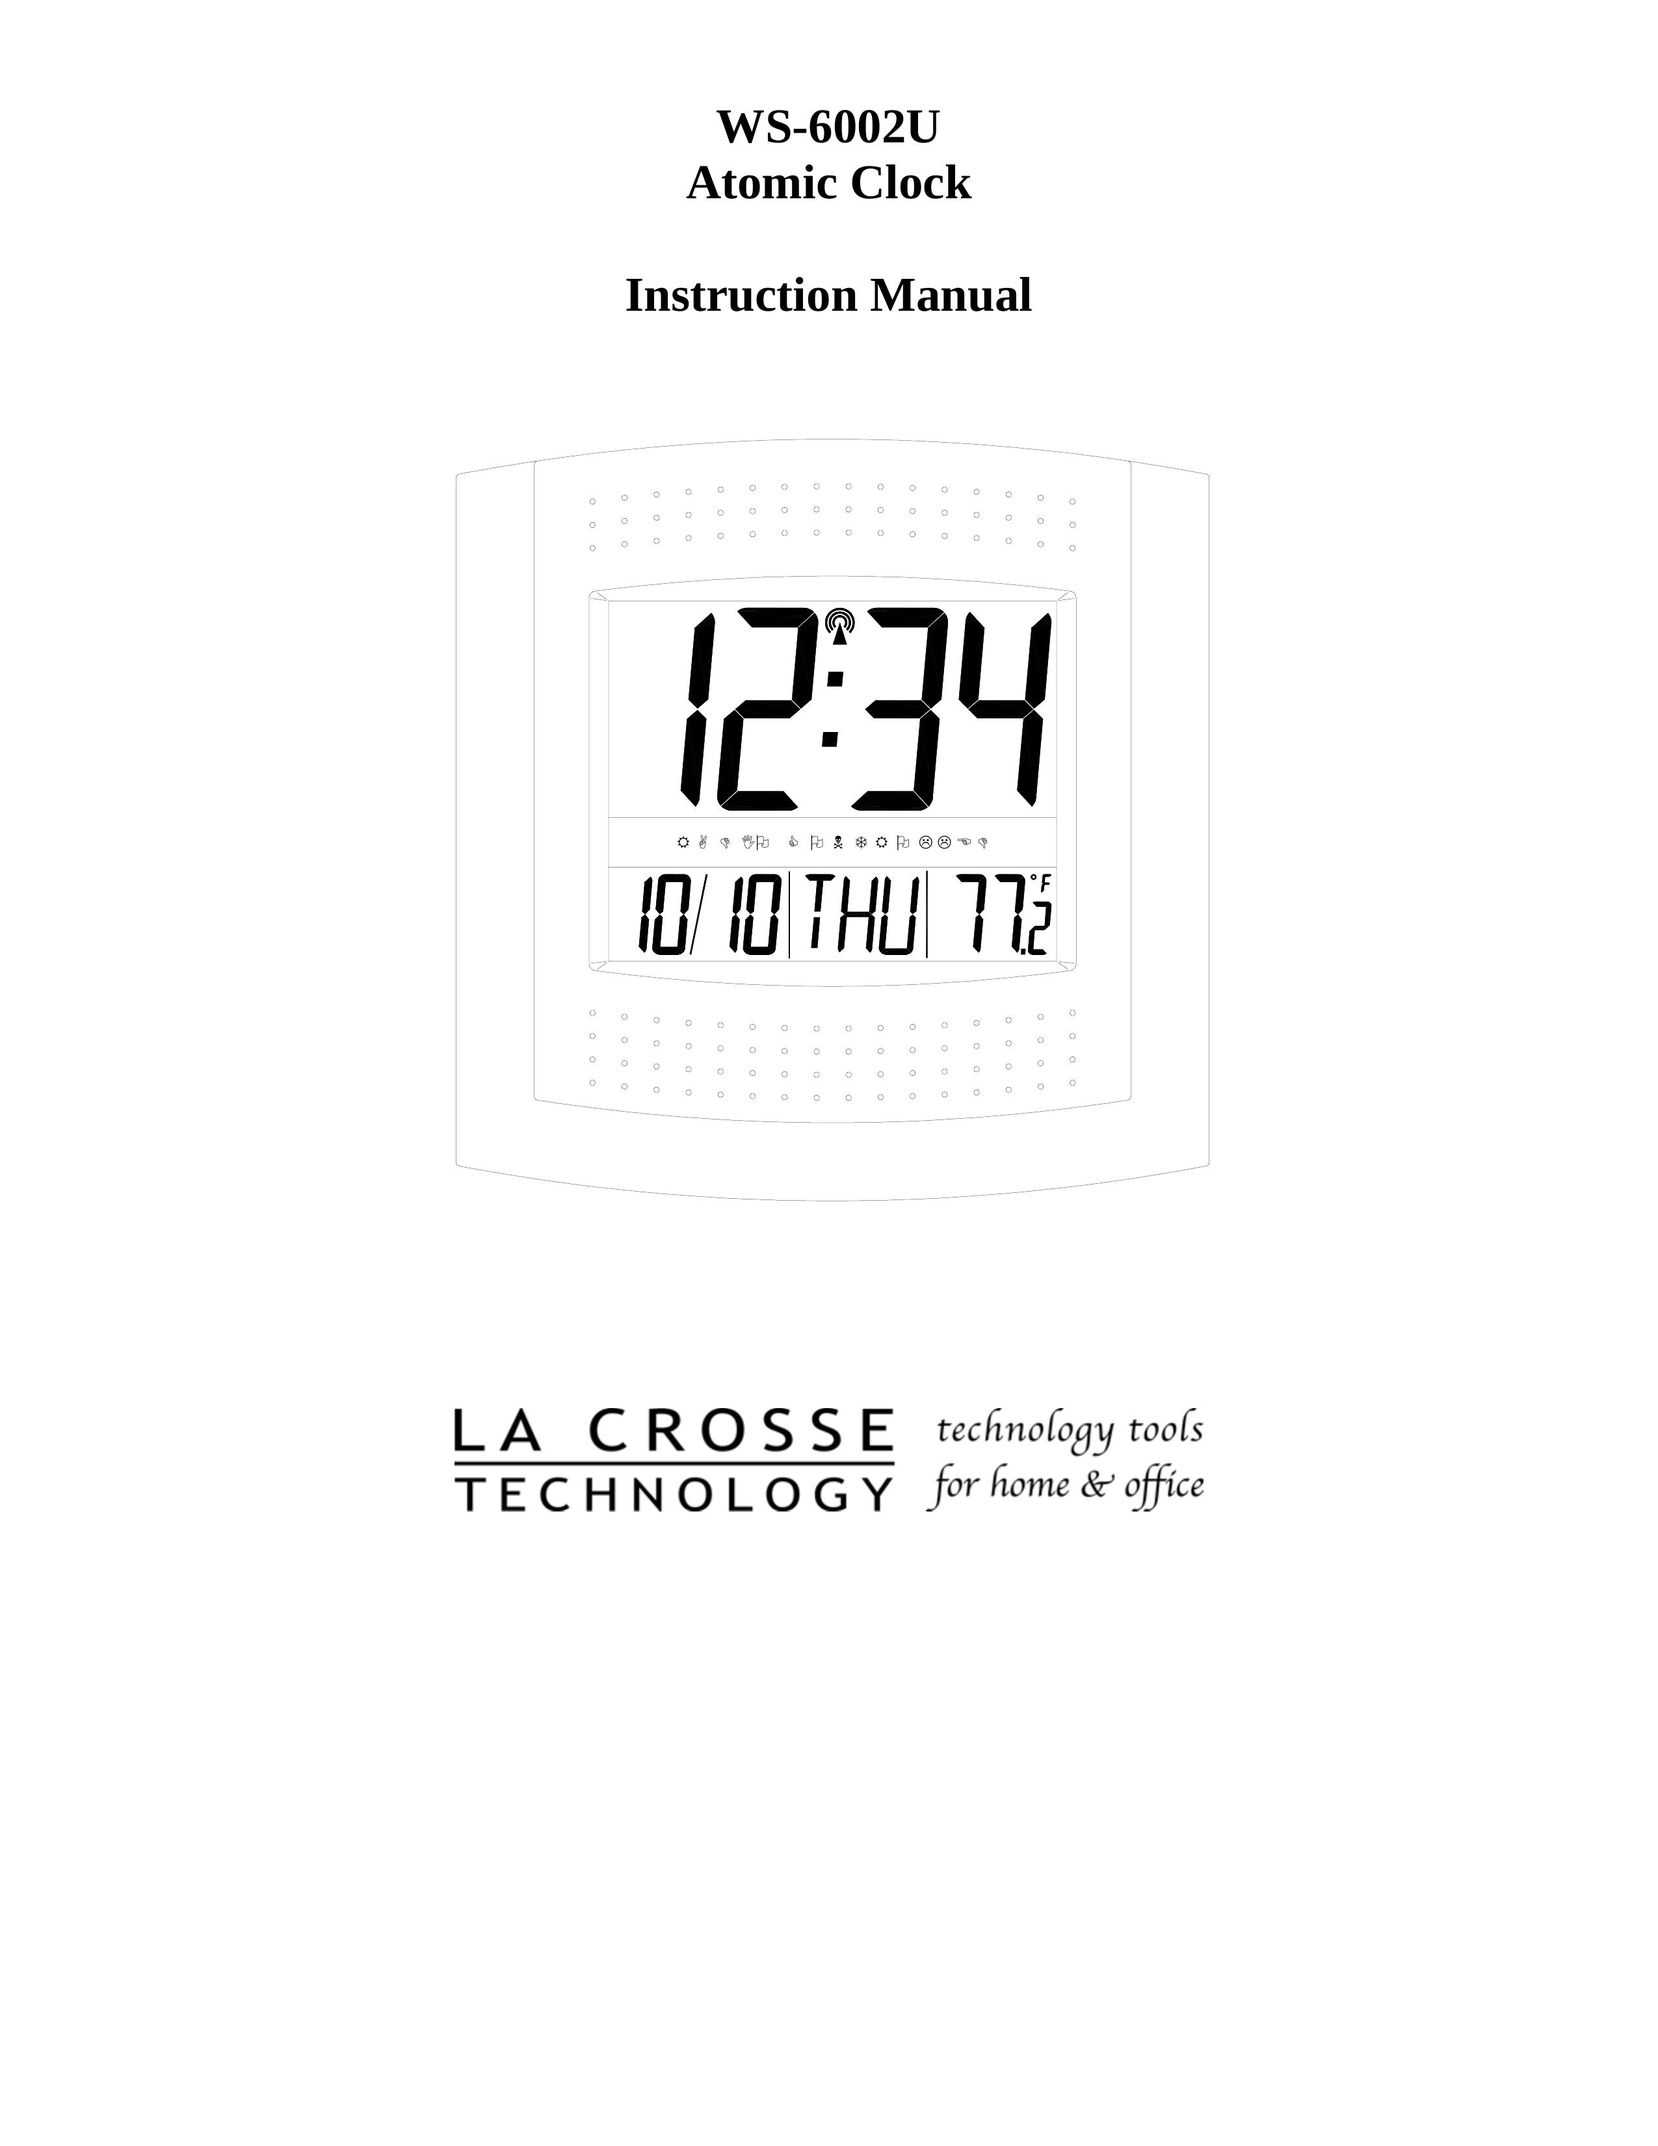 La Crosse Technology WS-6002U Clock User Manual